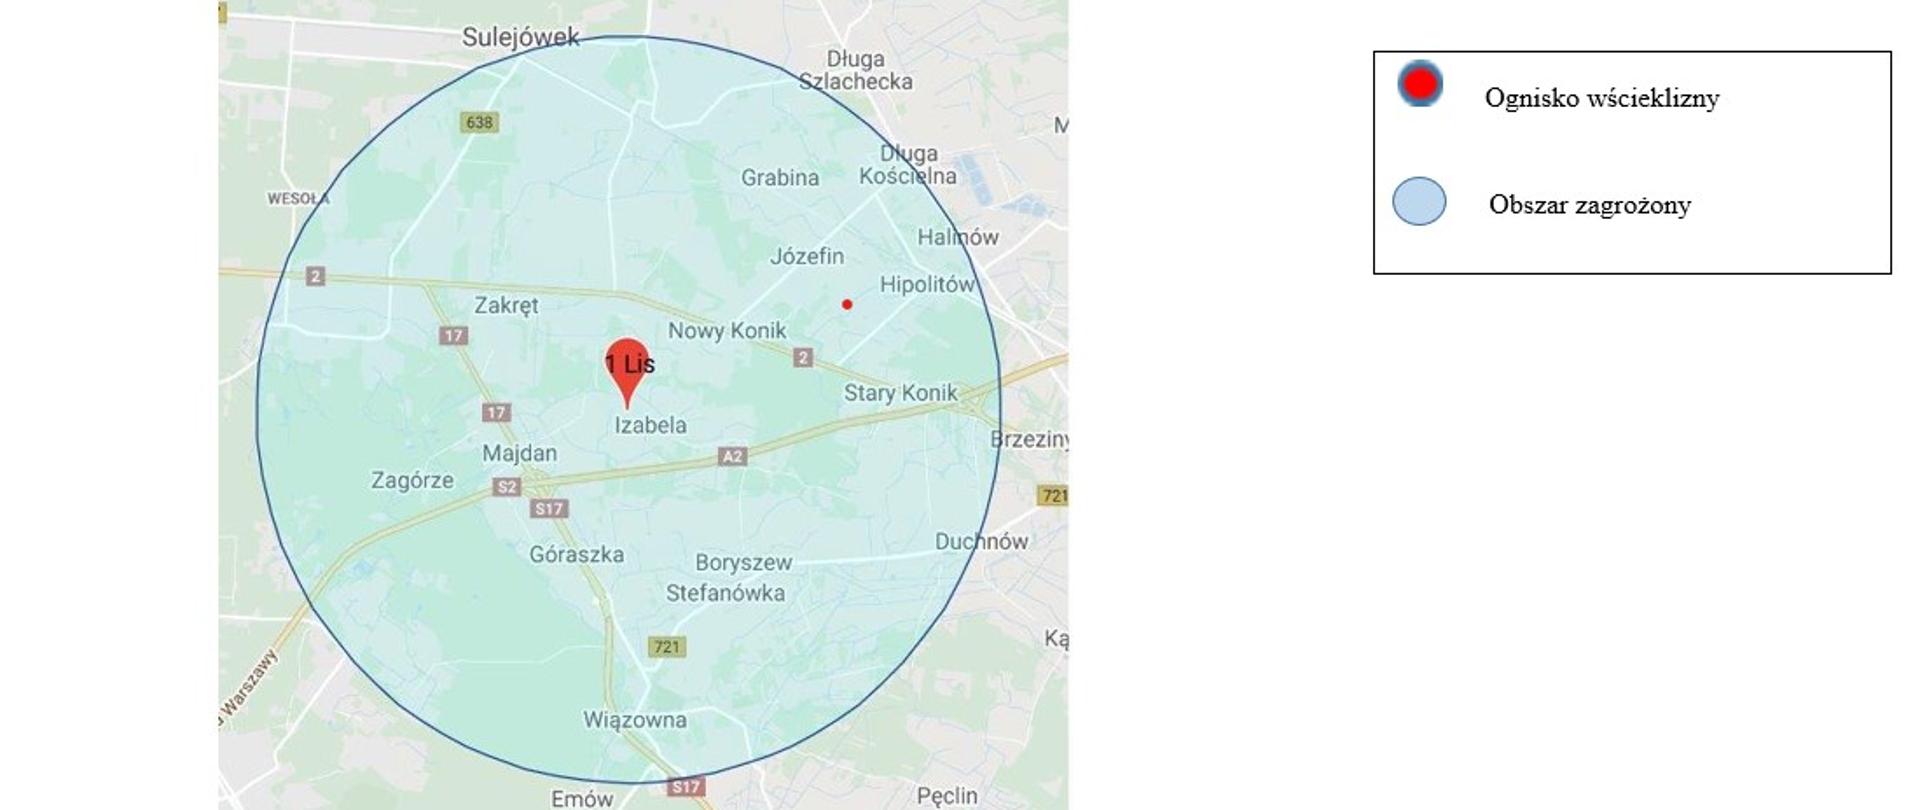 Grafika przedstawiająca mapę z zaznaczonym obszarem wścieklizny oraz obszarem zagrożenia wścieklizną na terenie powiatu otwockiego, mińskiego i m.st. Warszawy. 